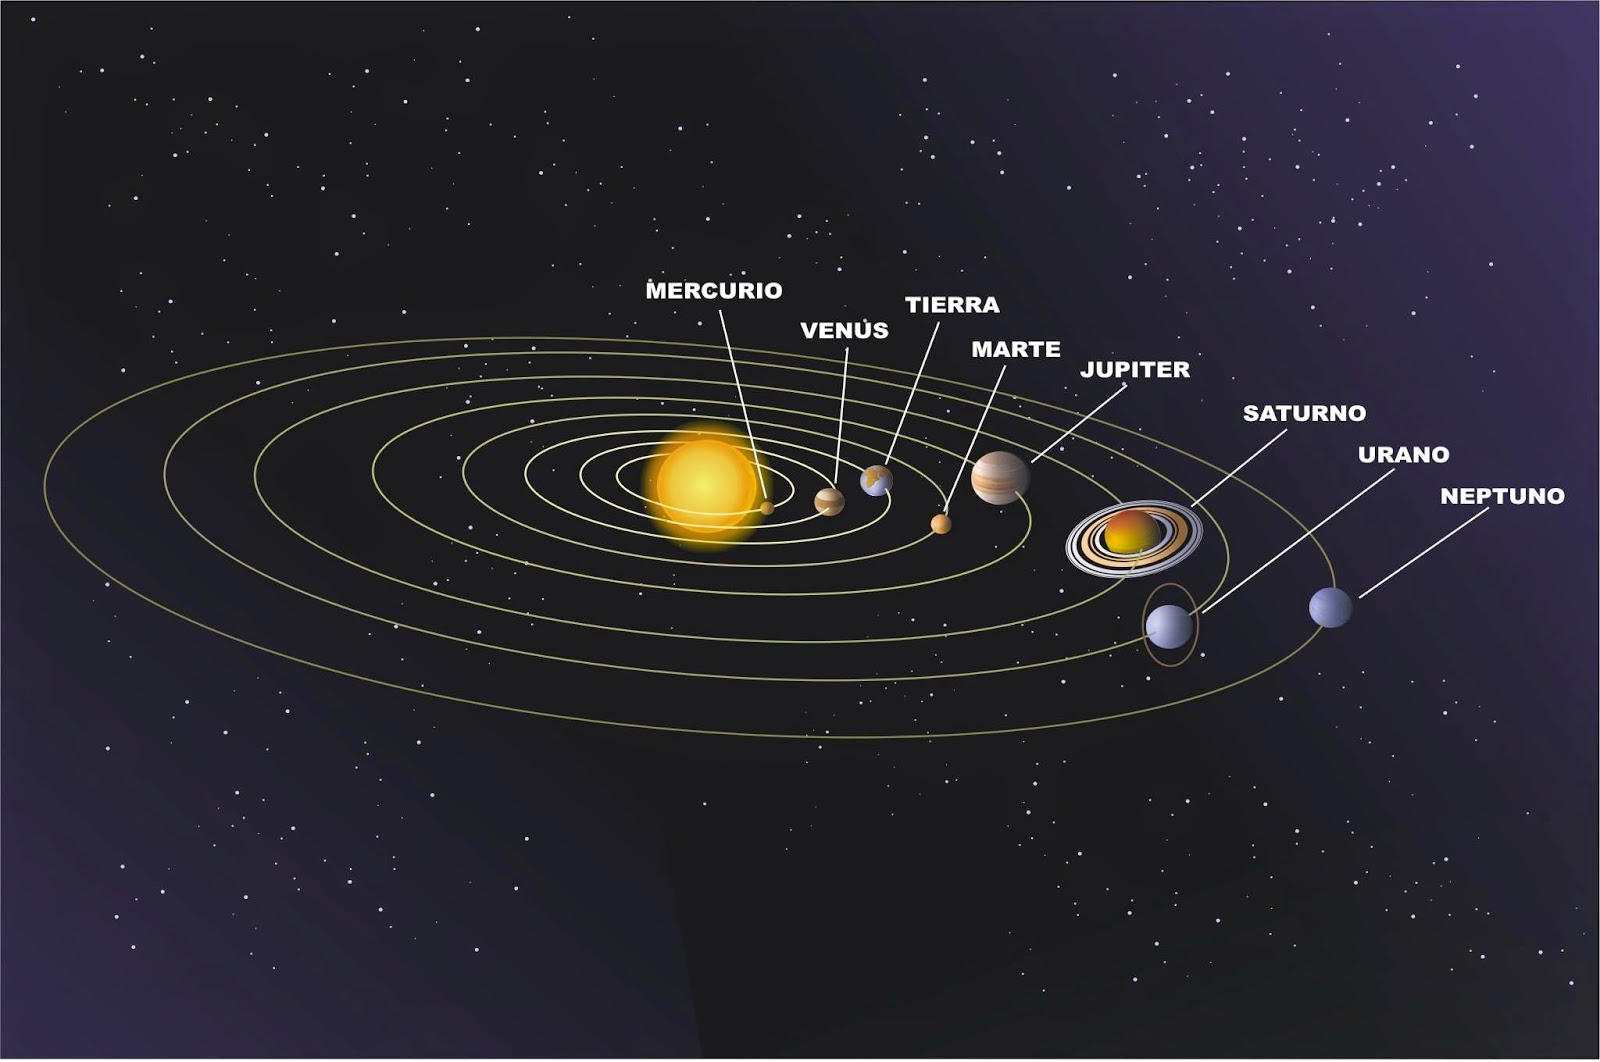 La ciencia es bella: El modelo helicoidal del sistema solar